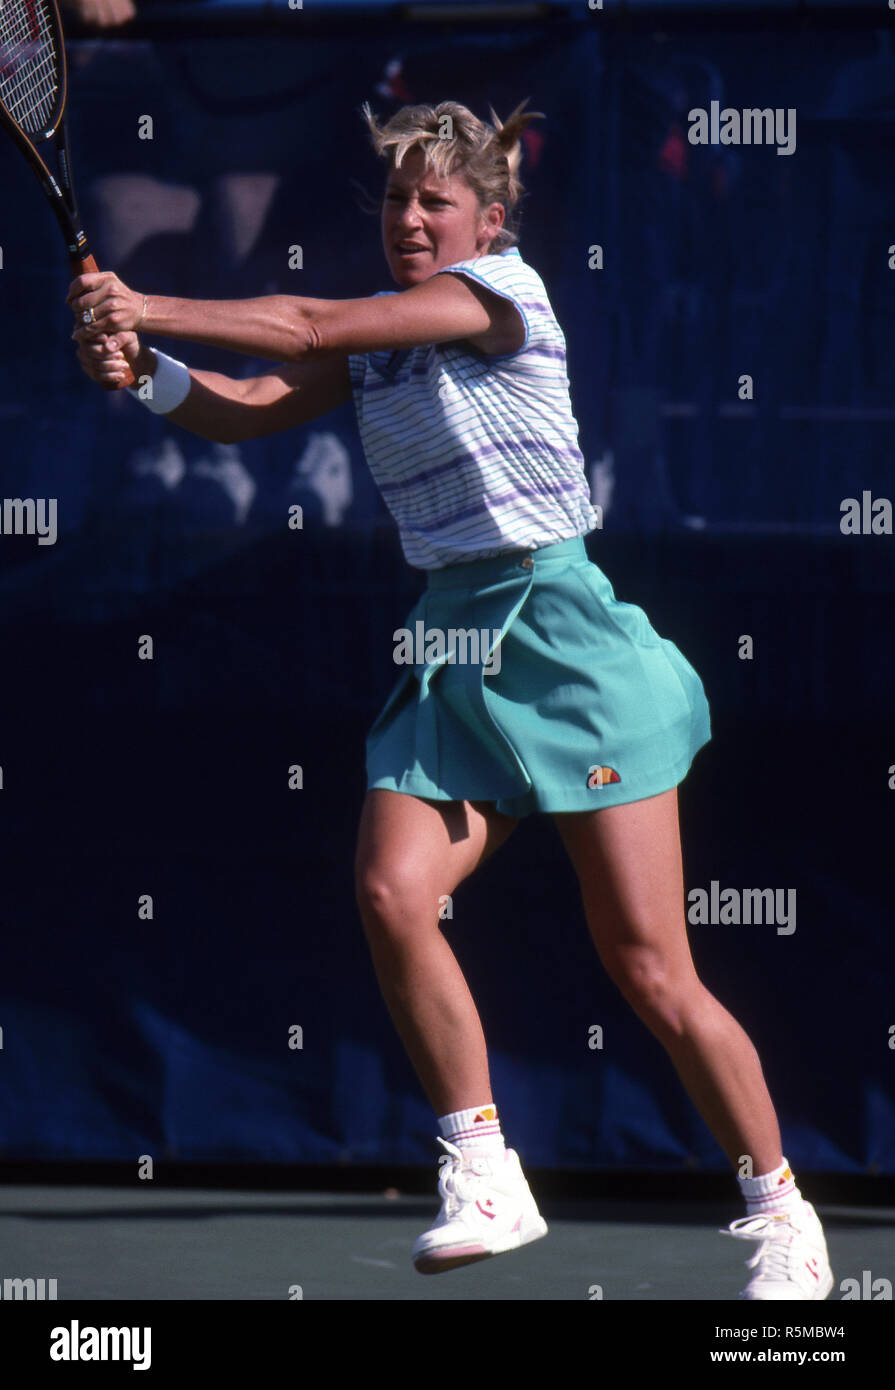 Damen Tennis In Den 1980er Jahren Stockfotos und -bilder Kaufen - Alamy